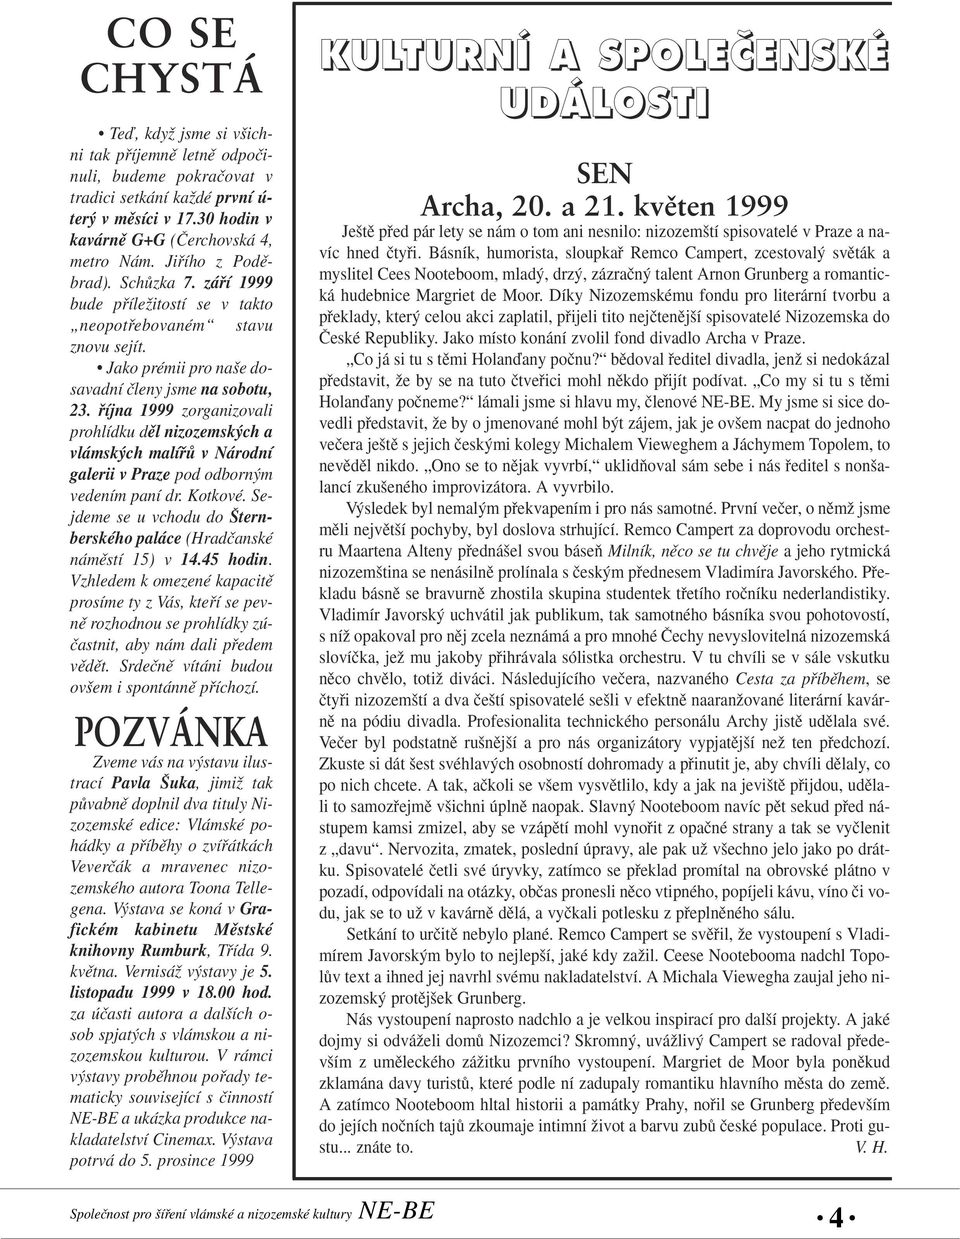 fiíjna 1999 zorganizovali prohlídku dûl nizozemsk ch a vlámsk ch malífiû v Národní galerii v Praze pod odborn m vedením paní dr. Kotkové.